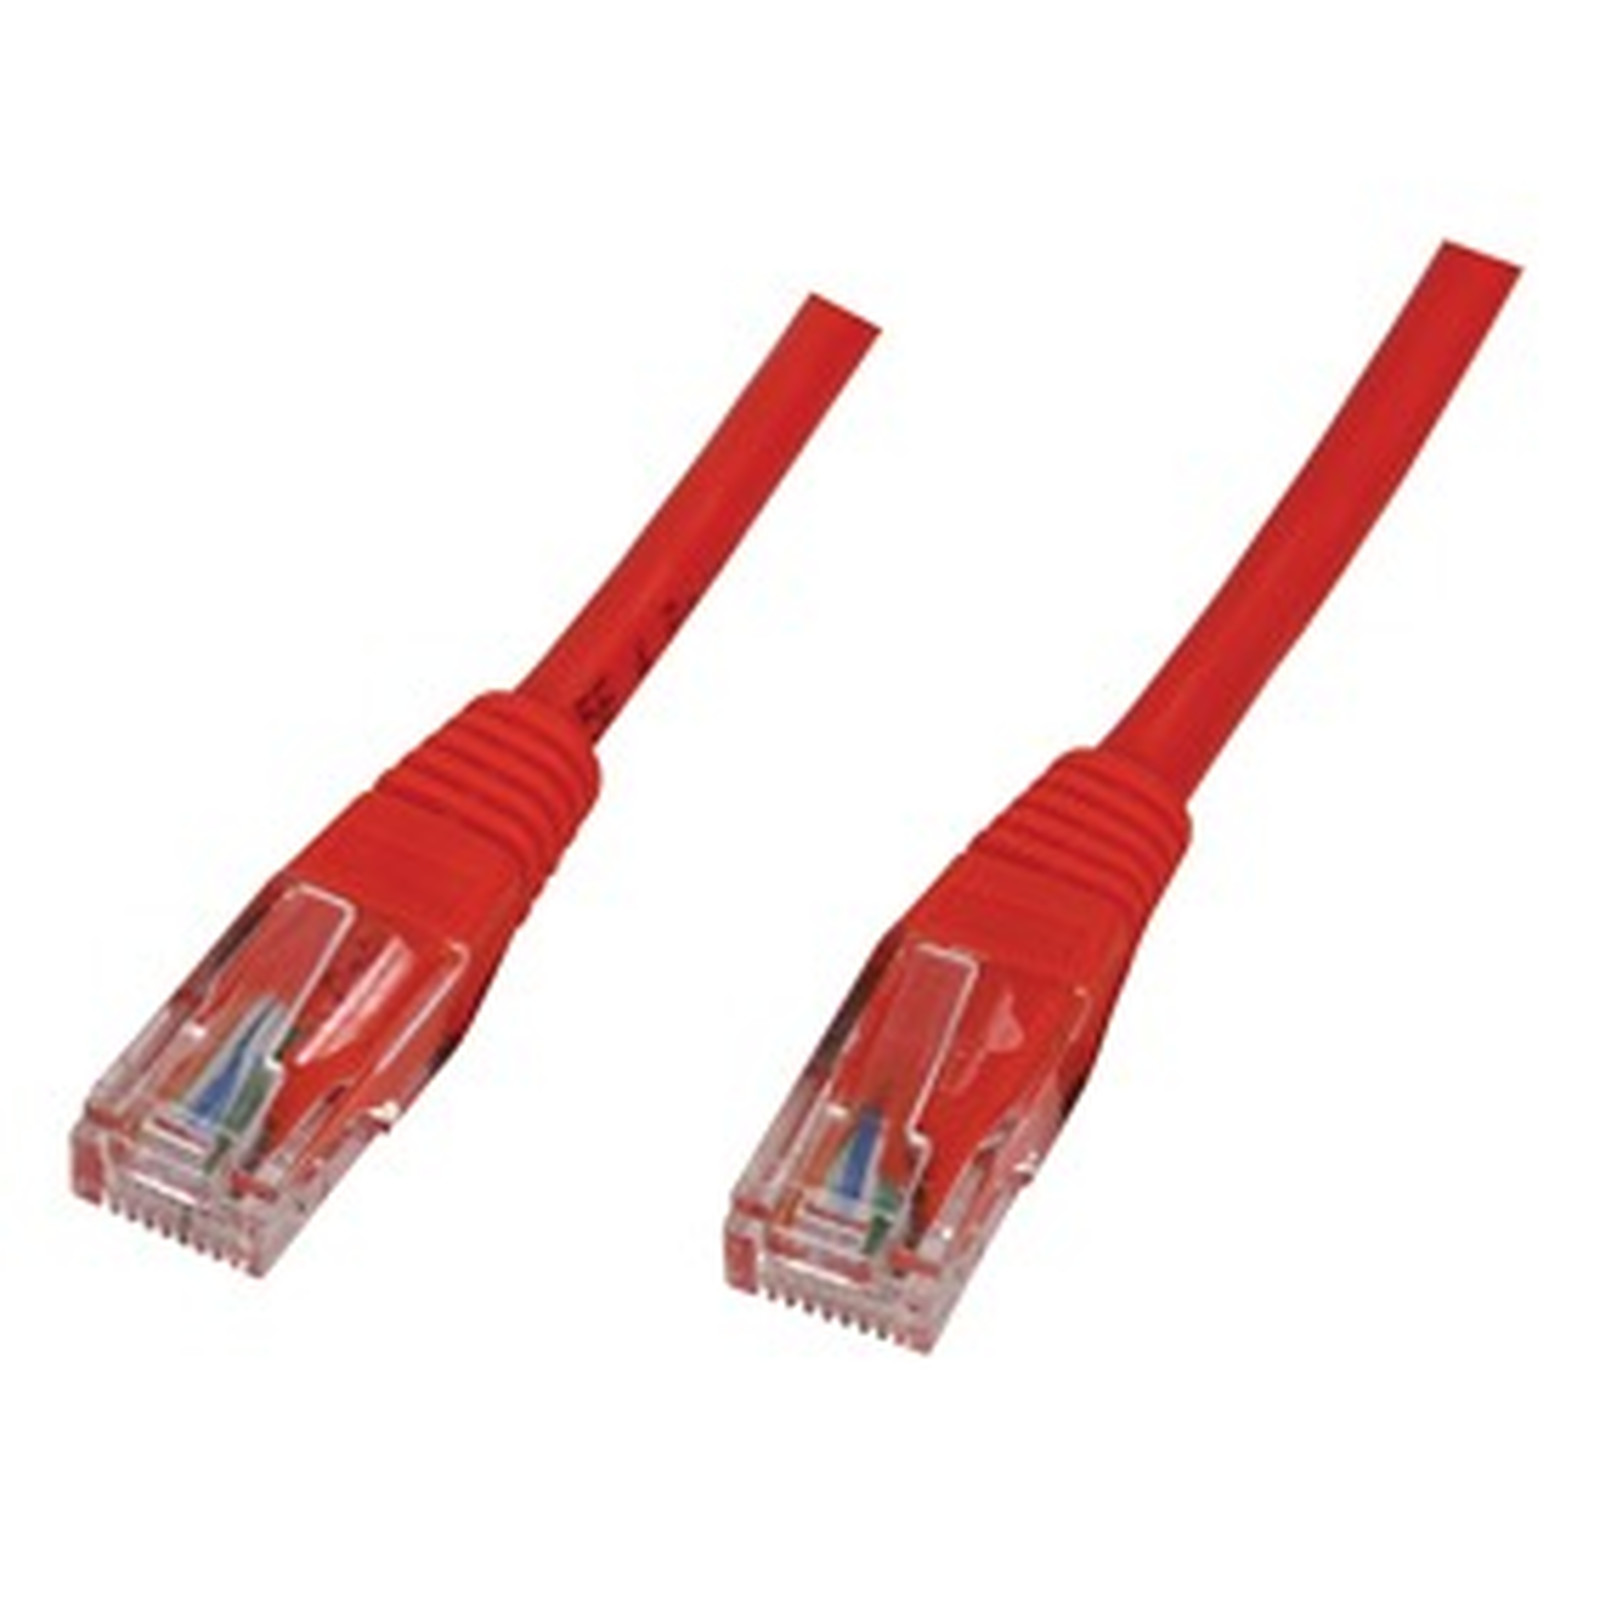 Cable RJ45 categorie 5e U/UTP 5 m (Rouge) - Cable RJ45 Generique